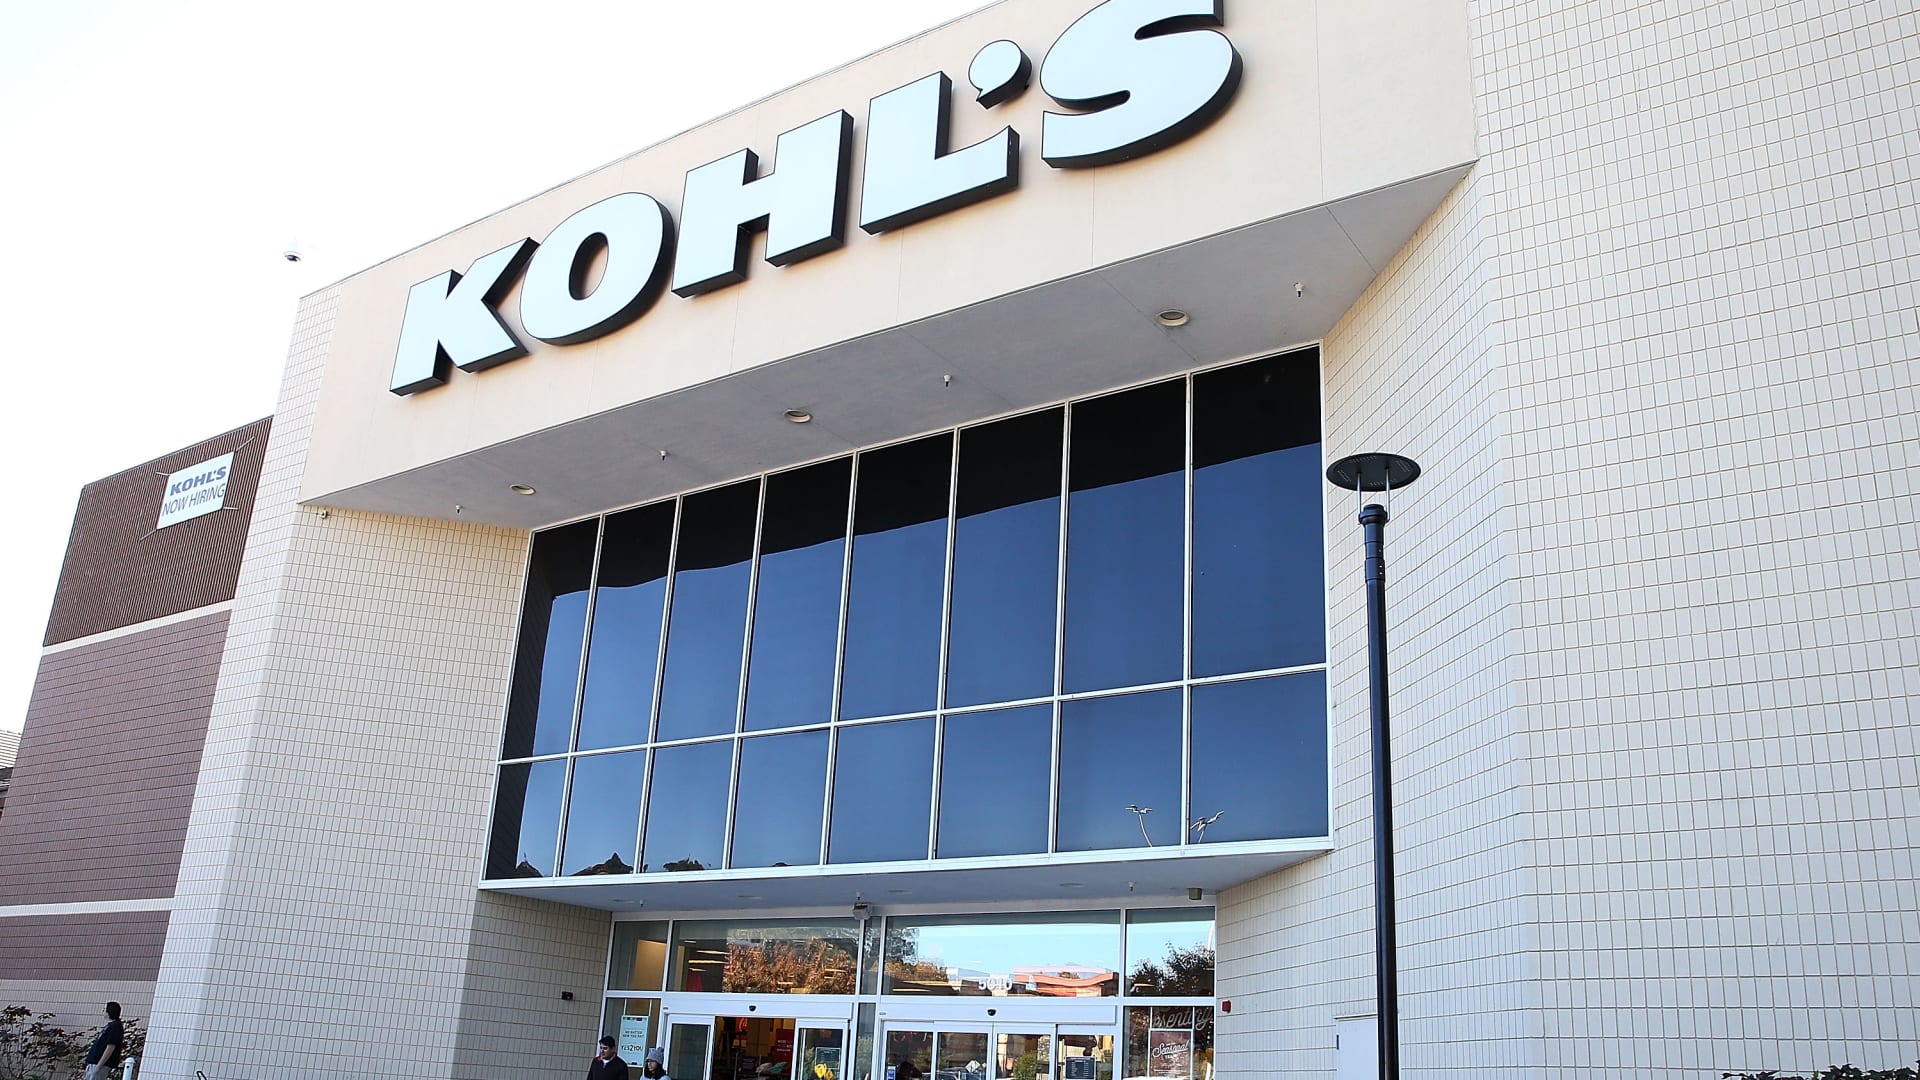 Kohl's (KSS) earnings Q4 2020 beat